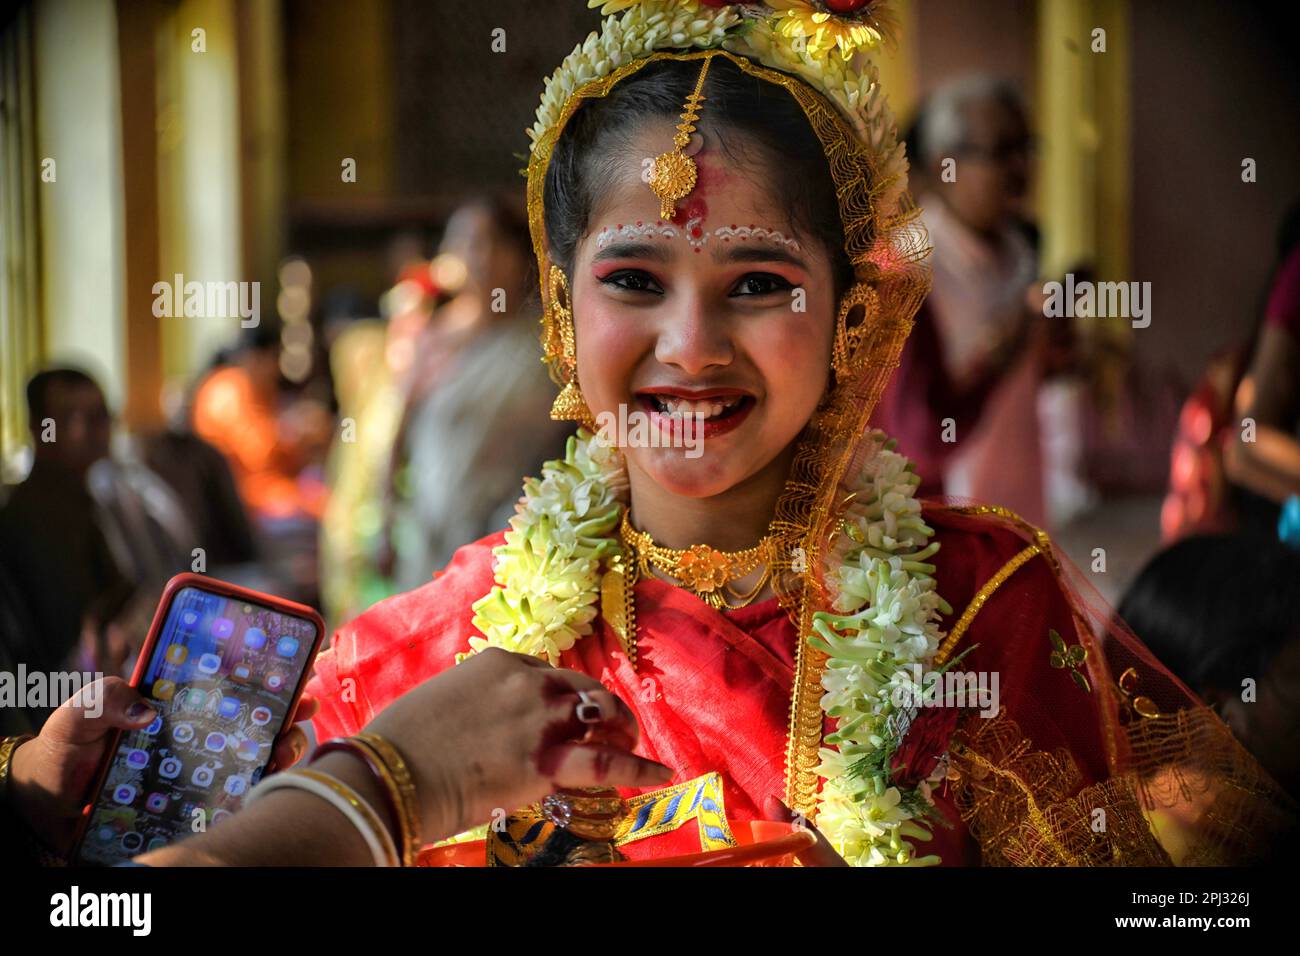 Ein Mädchen mit lächelndem Gesicht nimmt am Kumari-Puja-Ritual Teil. Kumari Puja ist eine indische hinduistische Tradition, die hauptsächlich während der Durga Puja/Basanti Puja/Navratri nach Hindu-Kalender gefeiert wird. Kumari beschreibt tatsächlich ein junges Mädchen im Alter von 1 bis 16 Jahren, das während des Übergangs von Ashtami/Navami tithi von Durga Puja/Navarintosh nach Hindu-Mythologie verehrt wird. Junge Mädchen, die während des Kumari Puja von ihren Müttern im Adyapith Tempel verehrt wurden, wird angenommen, dass Kumari Puja den Gläubigen und auch dem kleinen Mädchen viele Segen gewährt. Devotieren Stockfoto